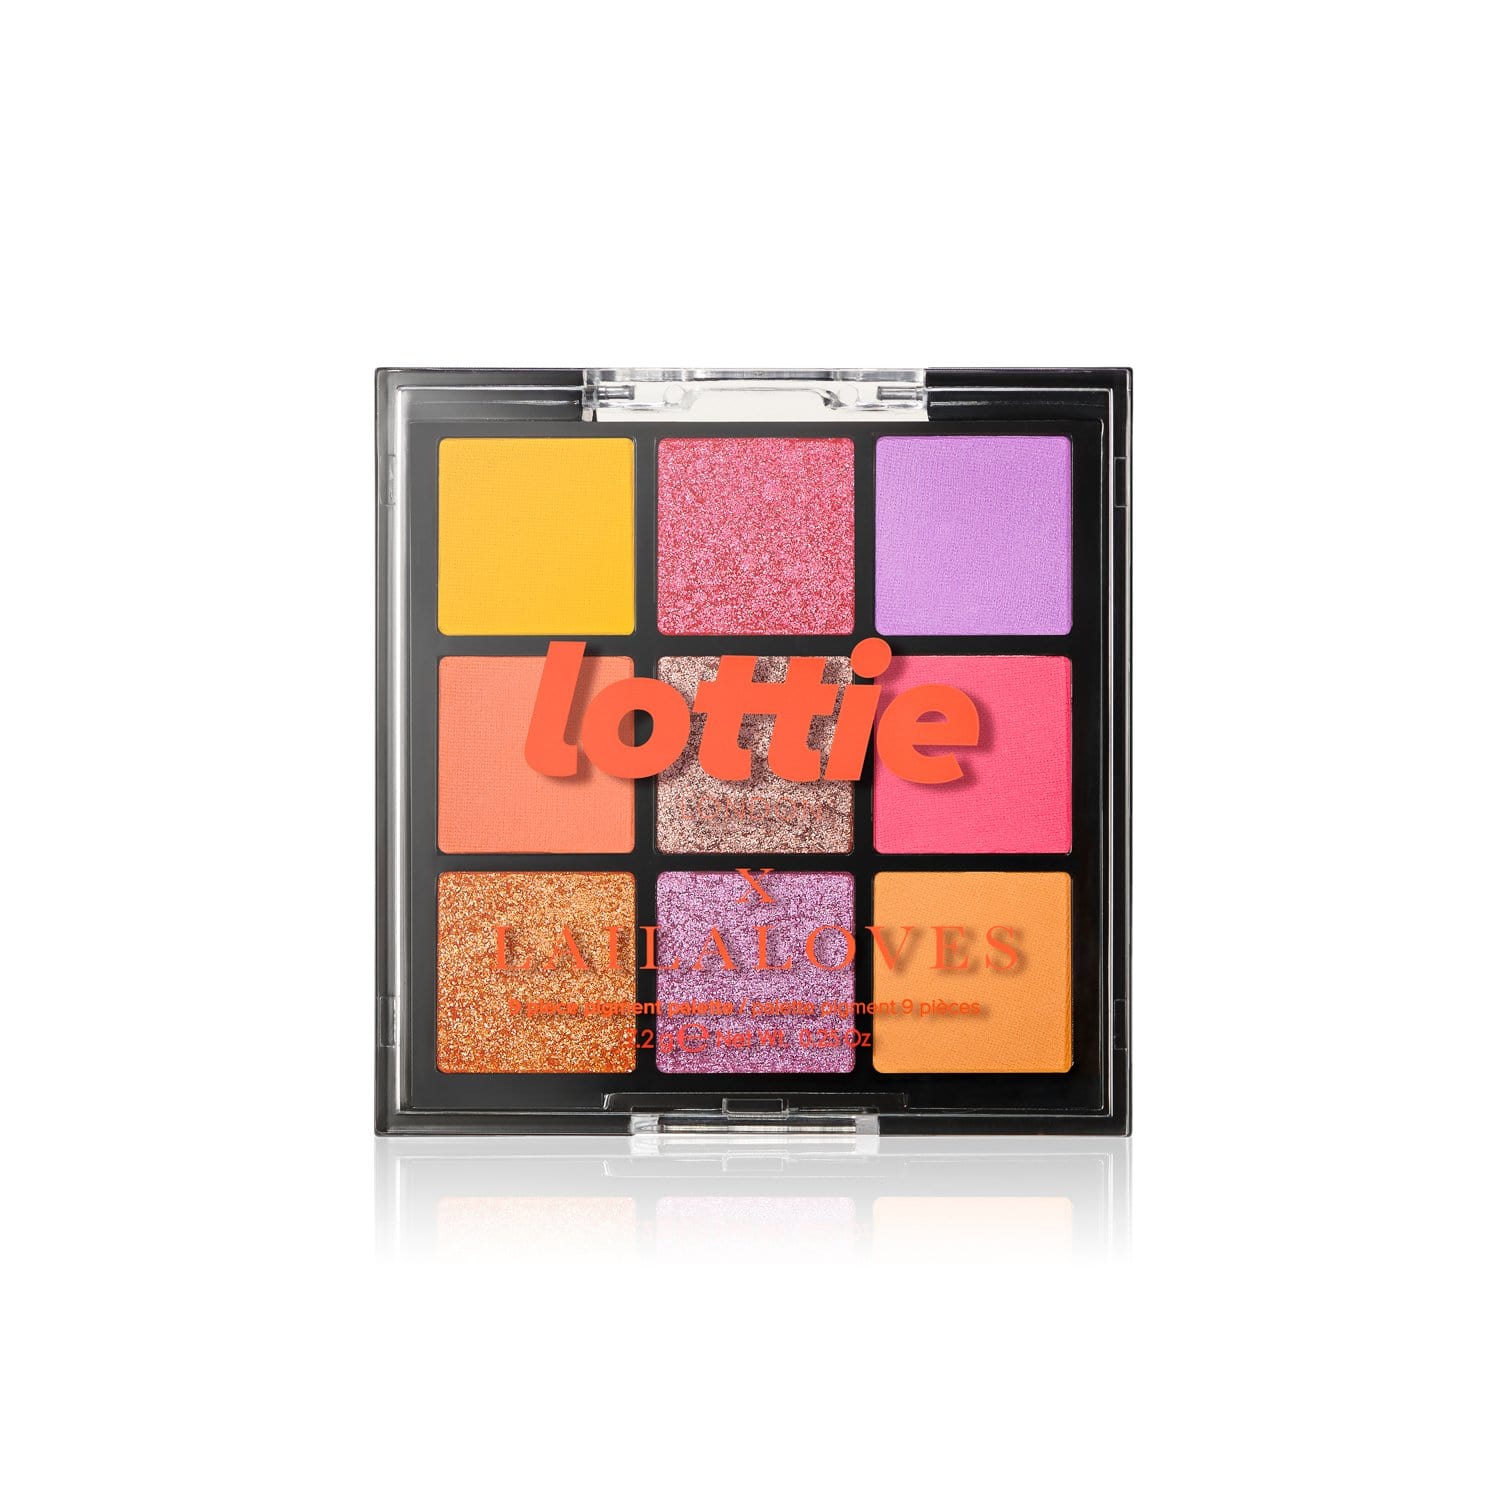 lottie x laila loves neon palette - ibiza Makeup 9 shade pigment palettes